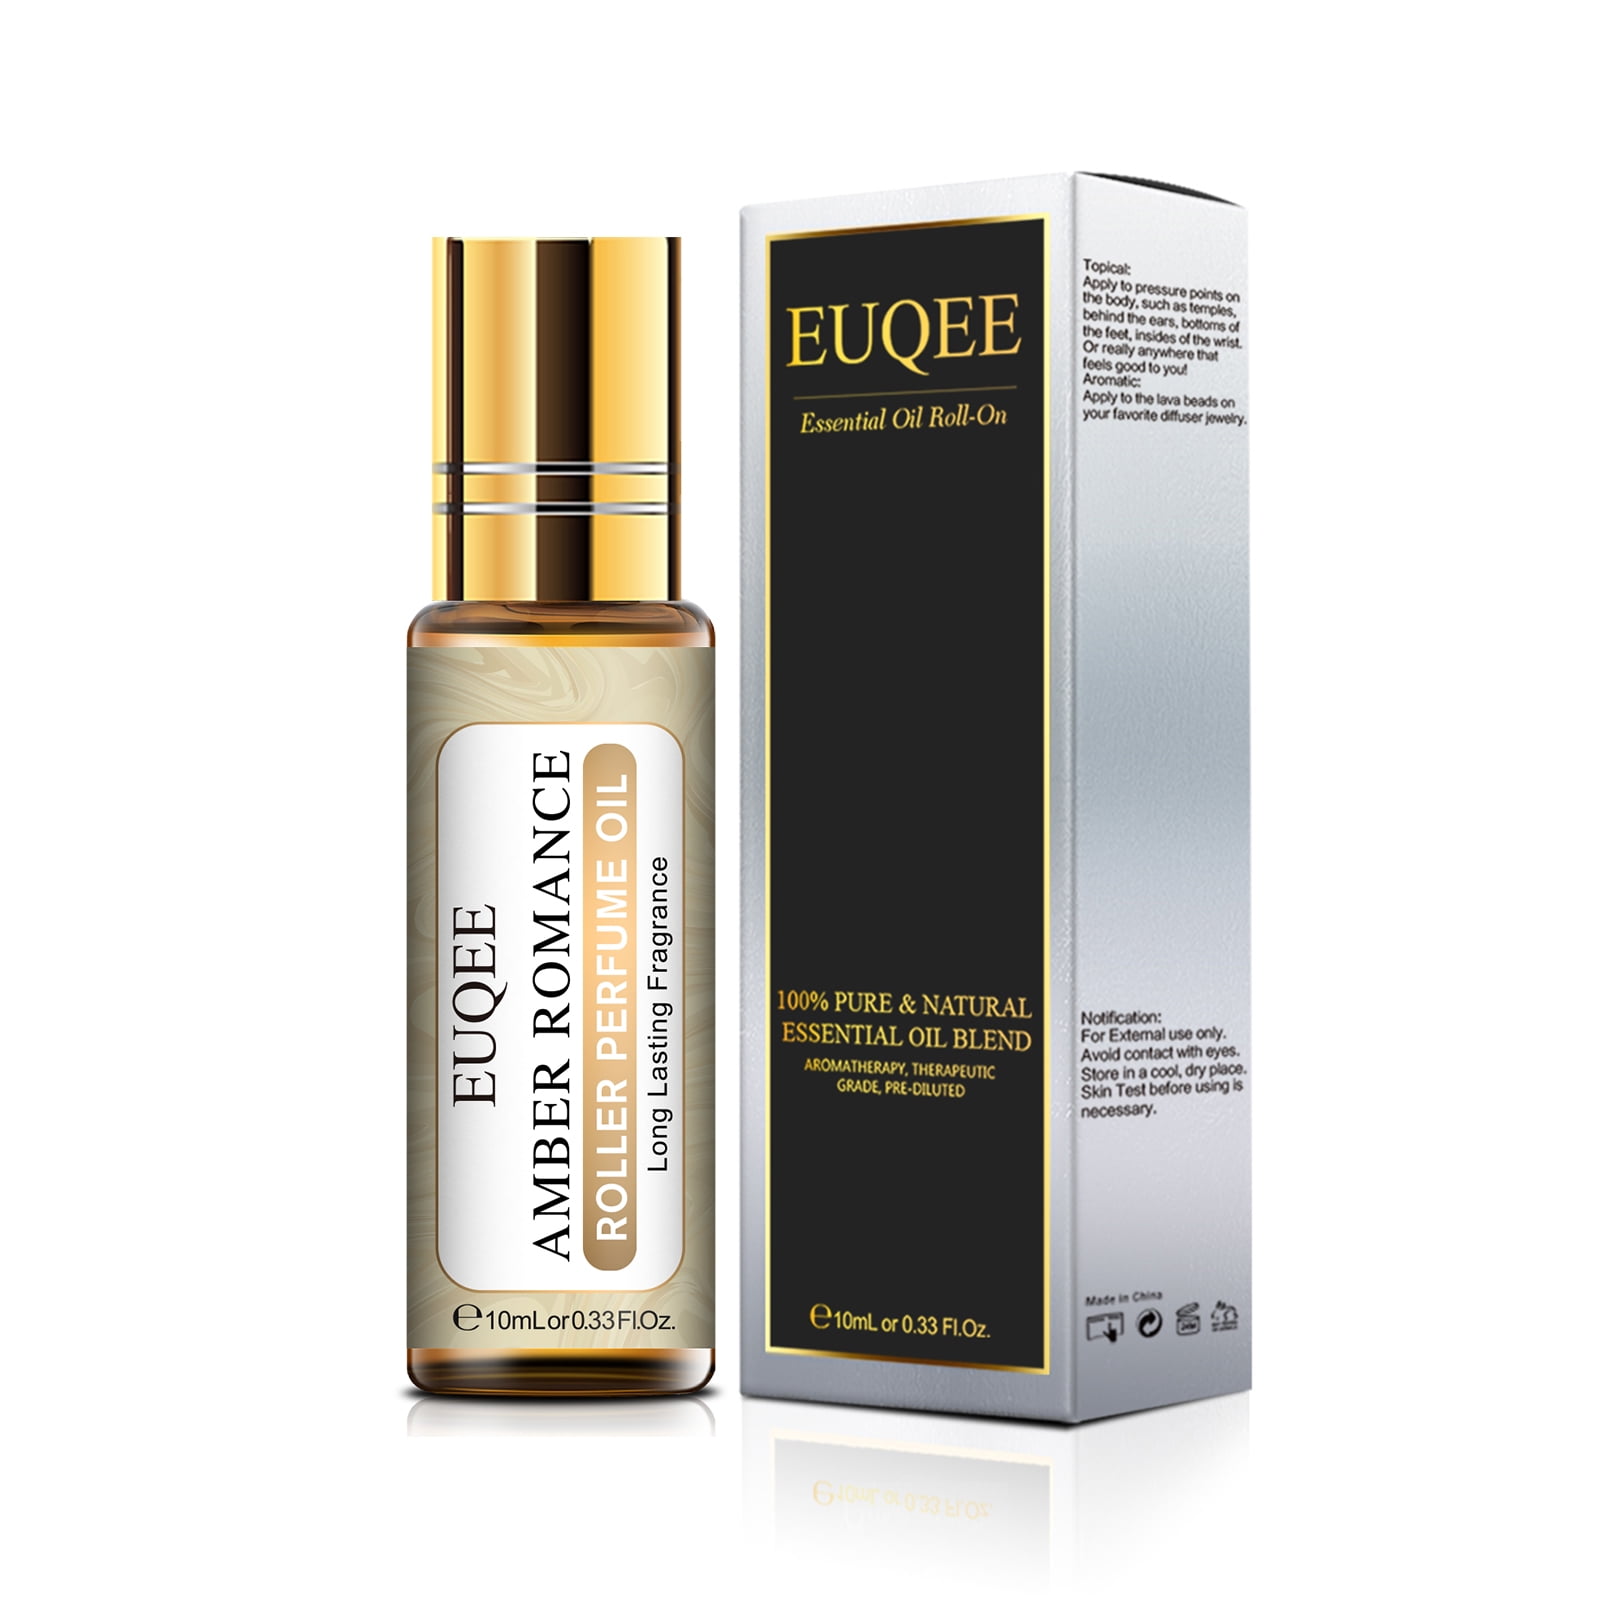 EUQEE Clean Cotton Roll-on Perfume Oil, Therapeutic Grade, Pure